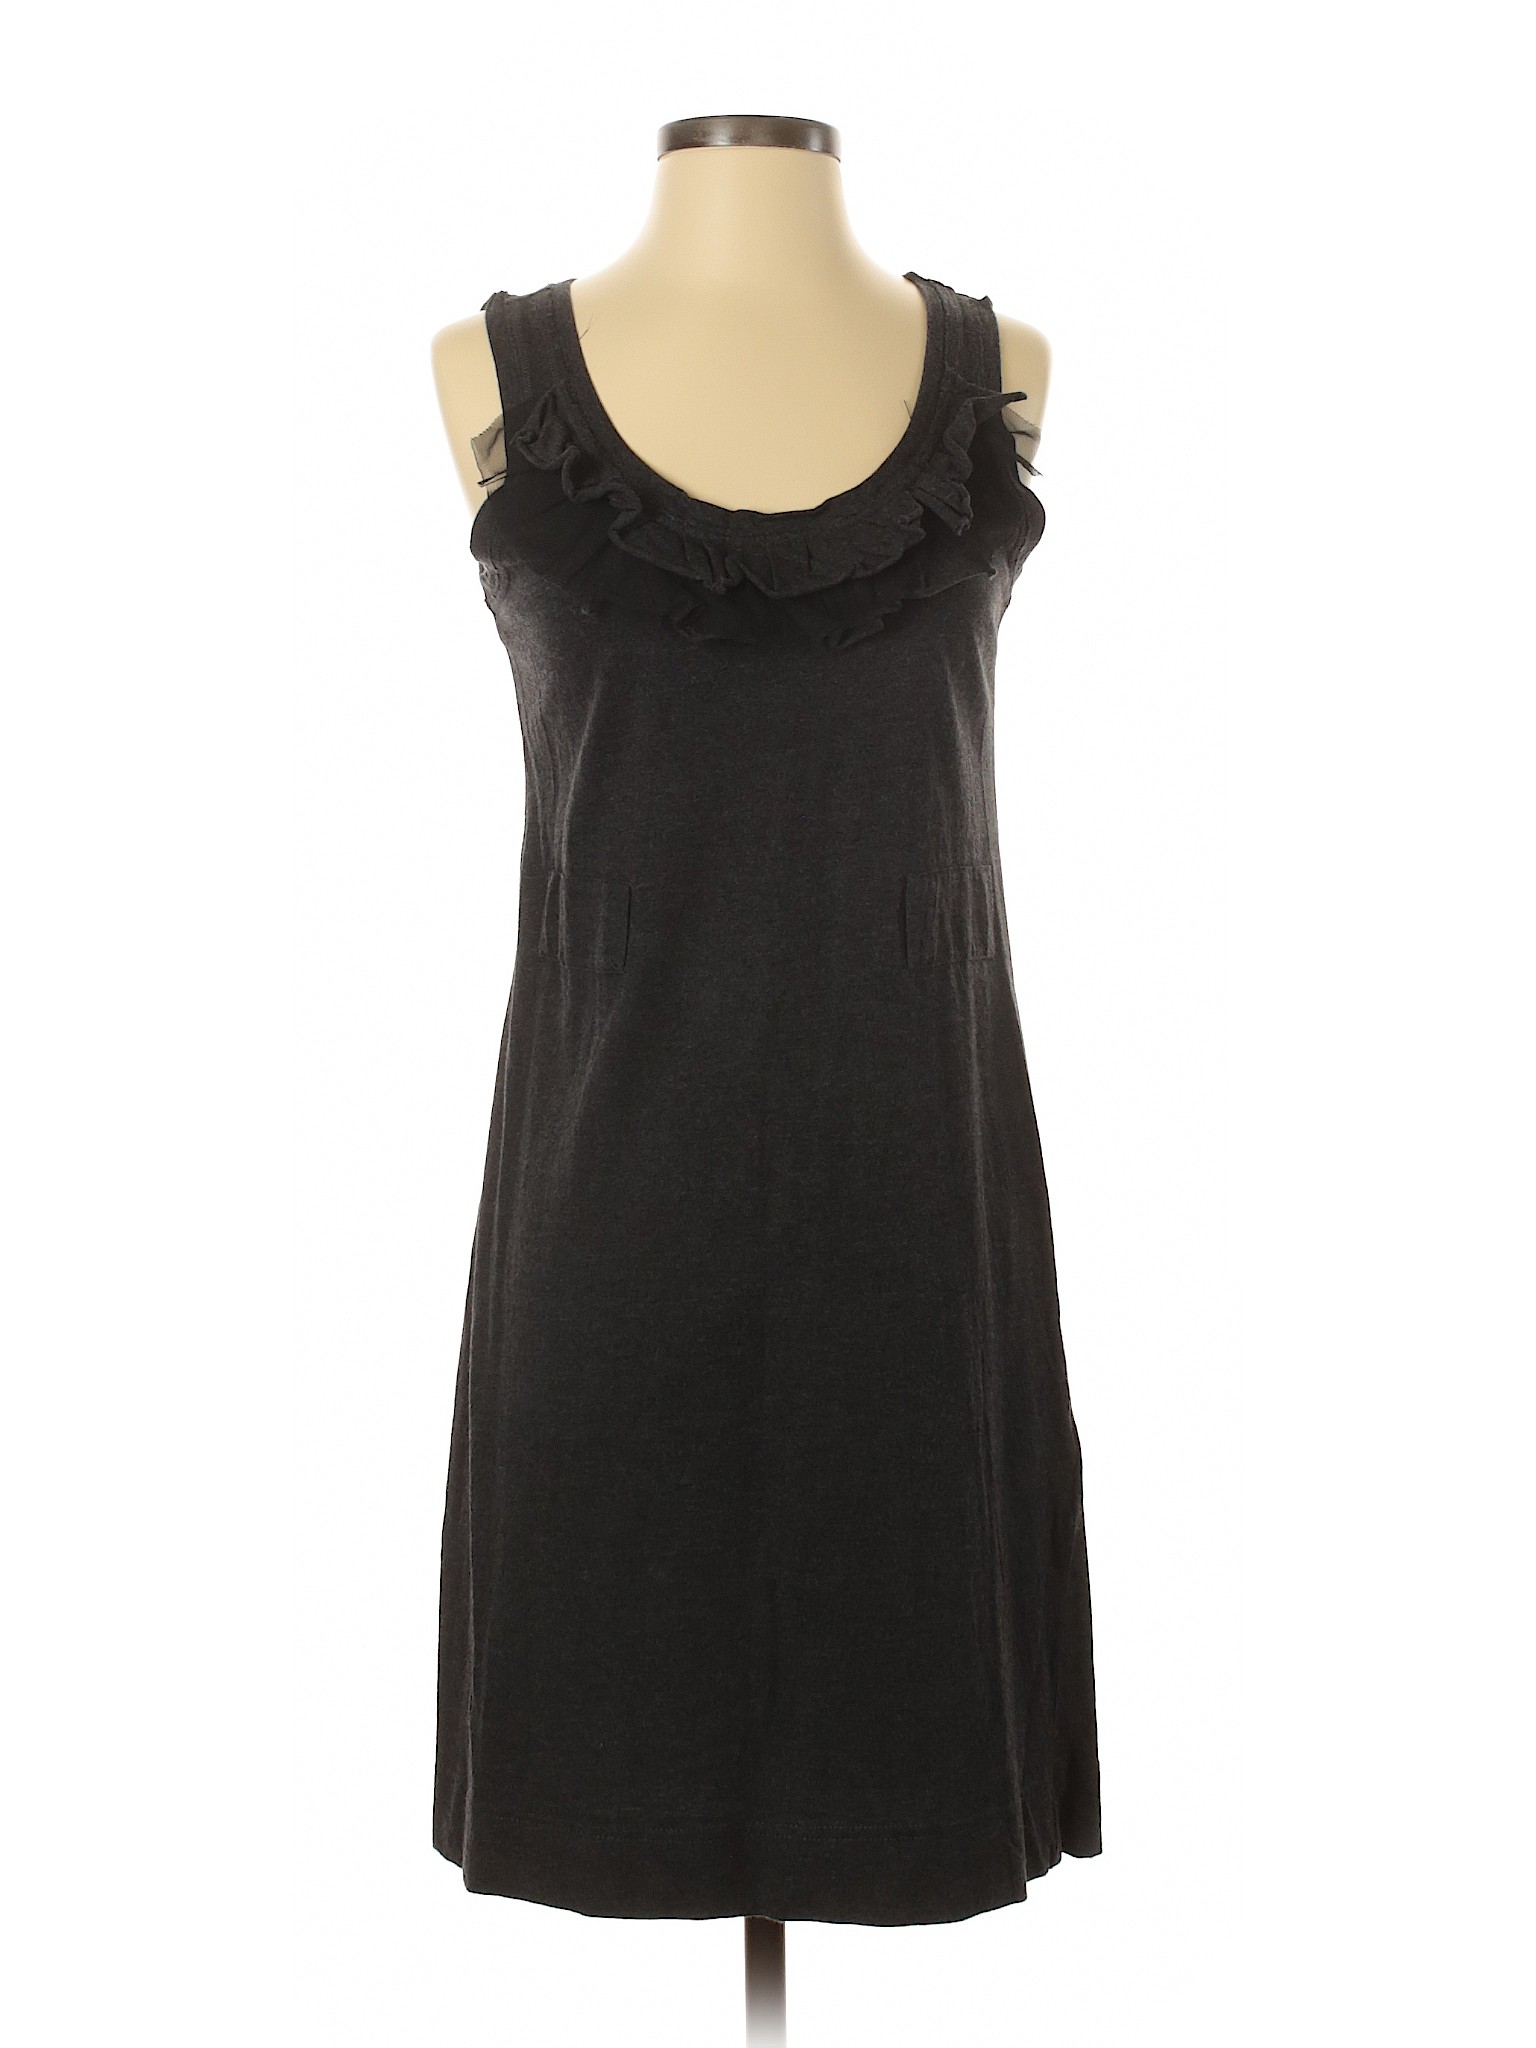 Simply Vera Vera Wang Women Gray Casual Dress XS | eBay